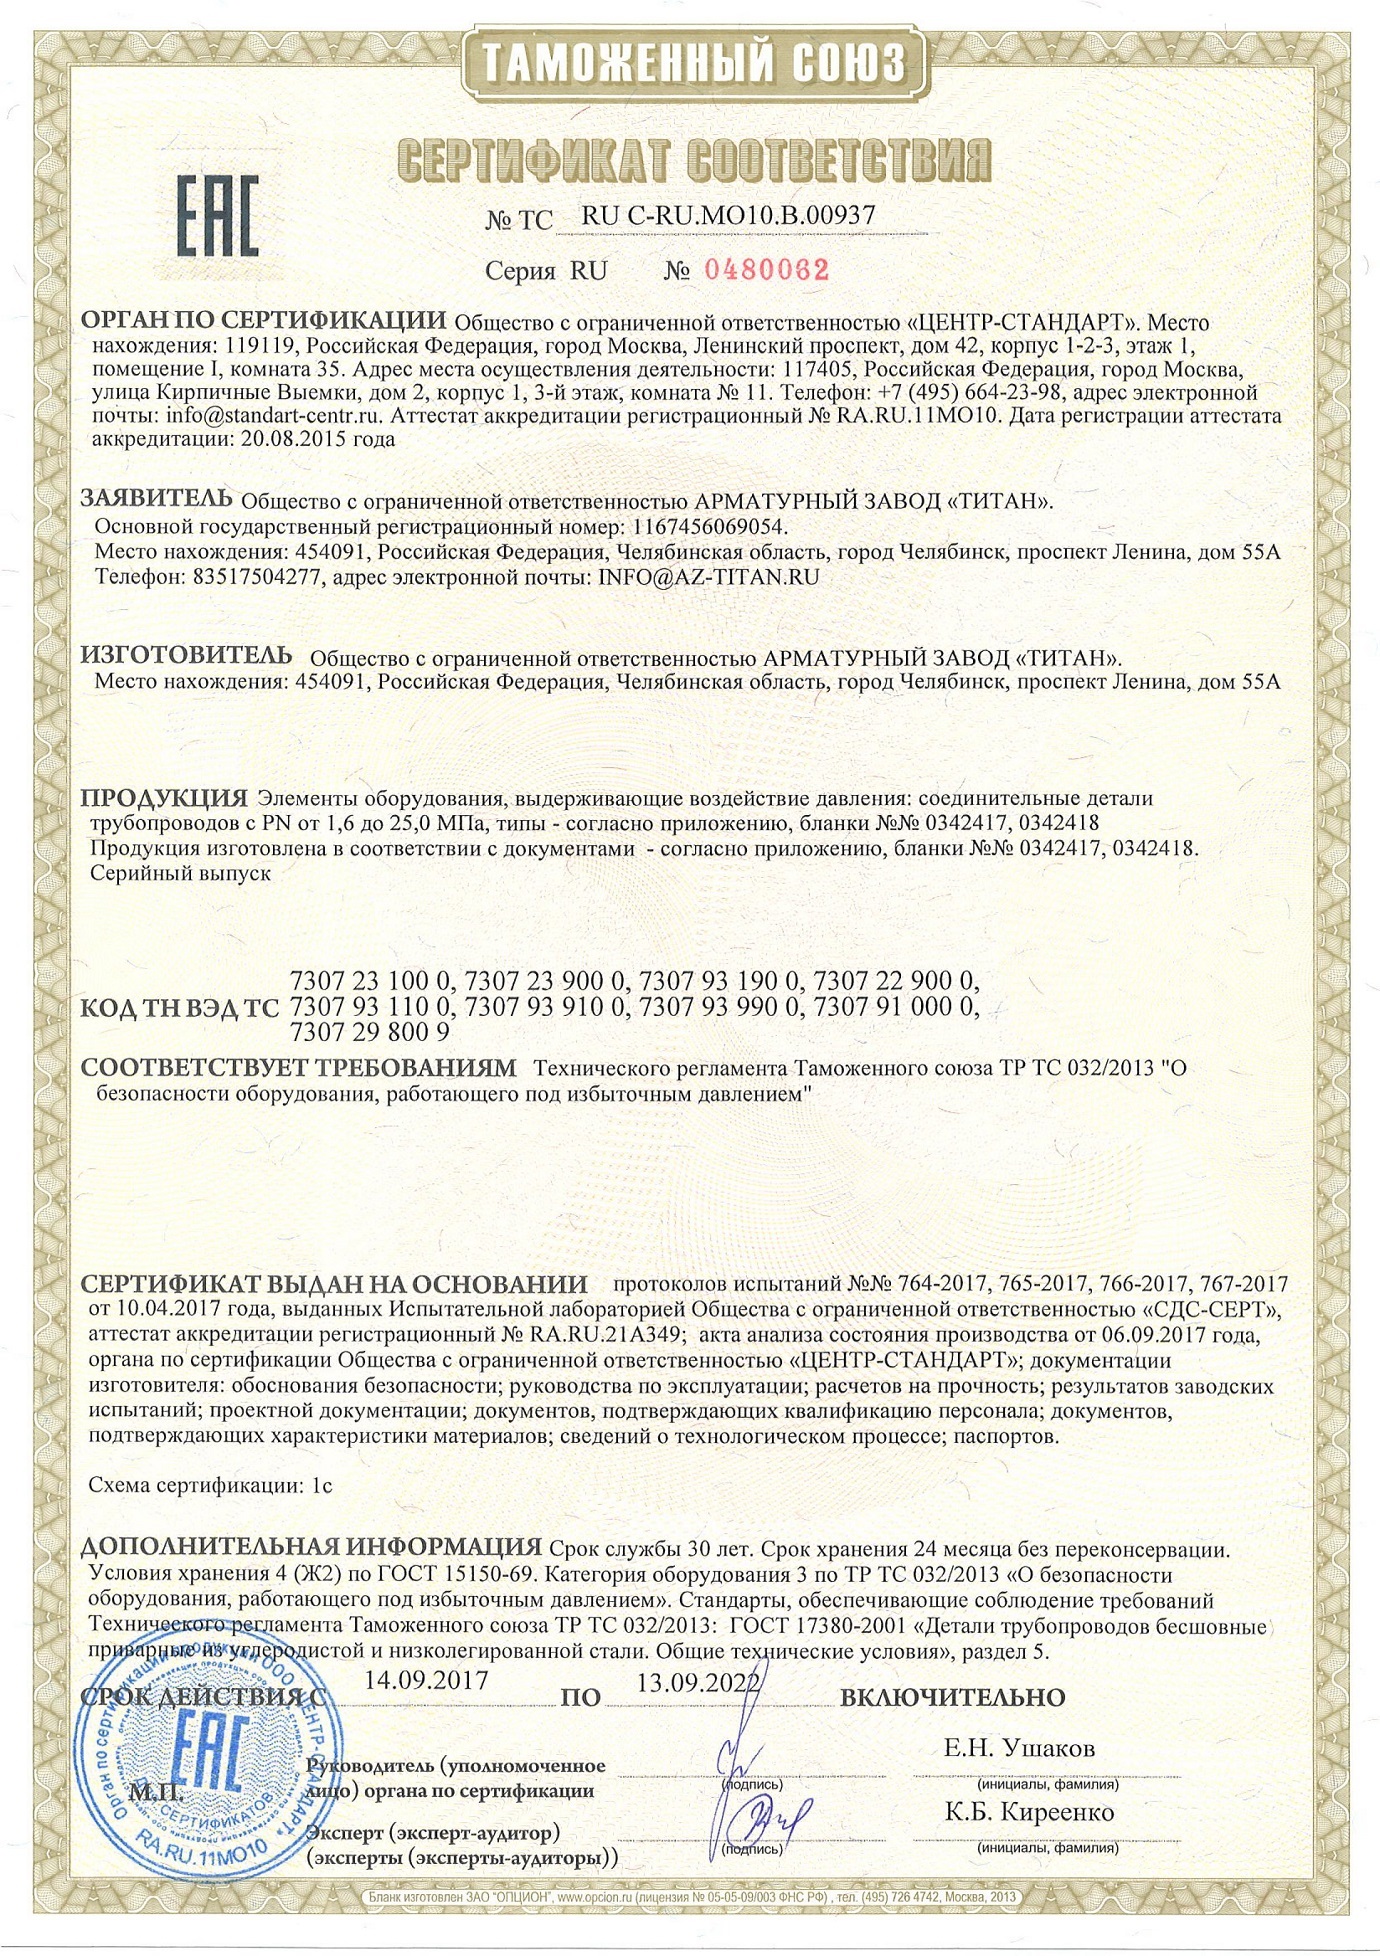 Сертификат соответствия ТР ТС. Изготовитель АЗ "Титан"